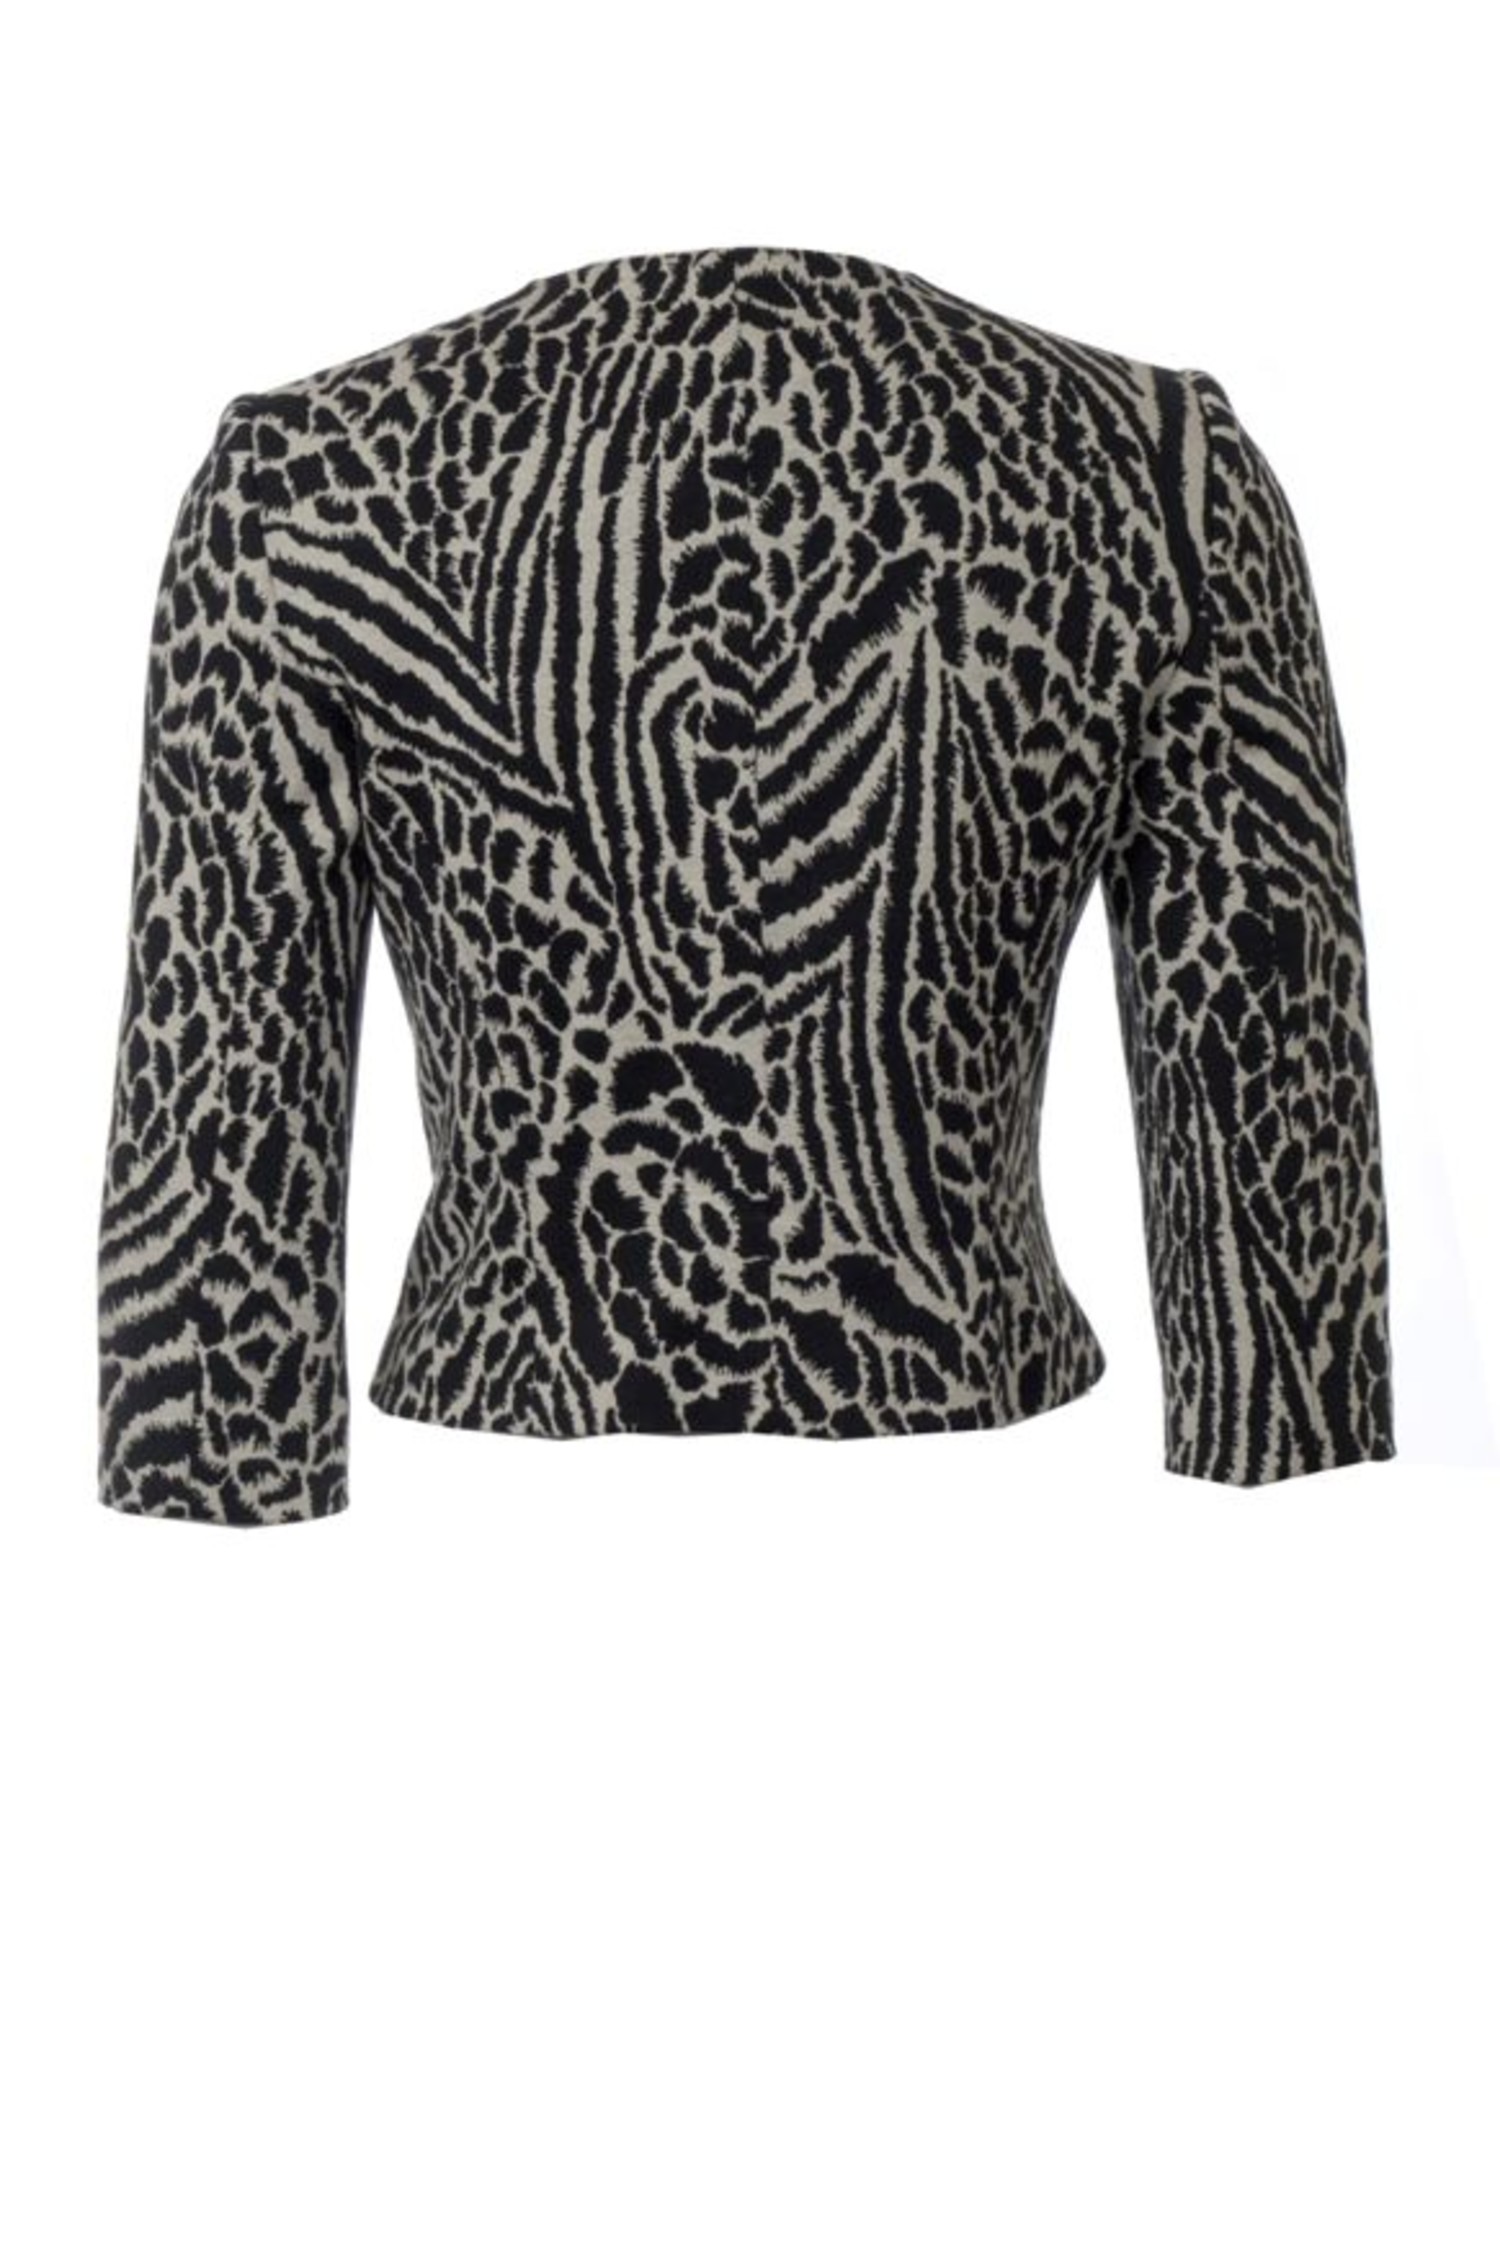 Staat Zichzelf helpen Wolford Wolford, bolero jasje in zwart/wit met luipaard print in maat S. -  Unique Designer Pieces